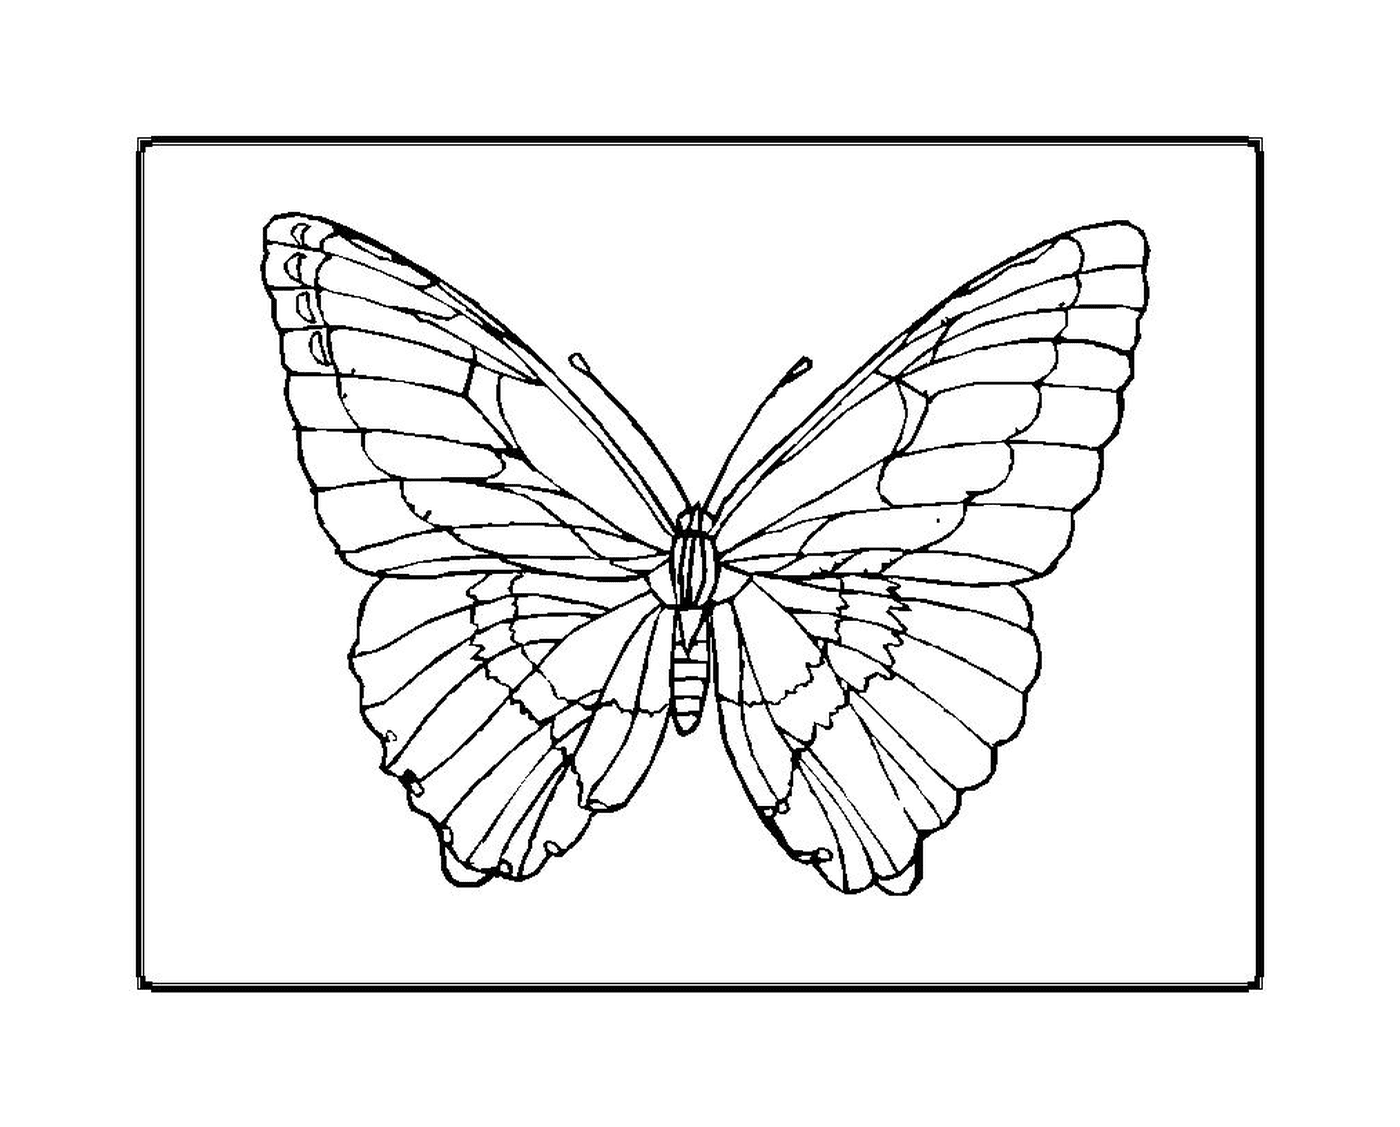  mariposa parpadeante y elegante 